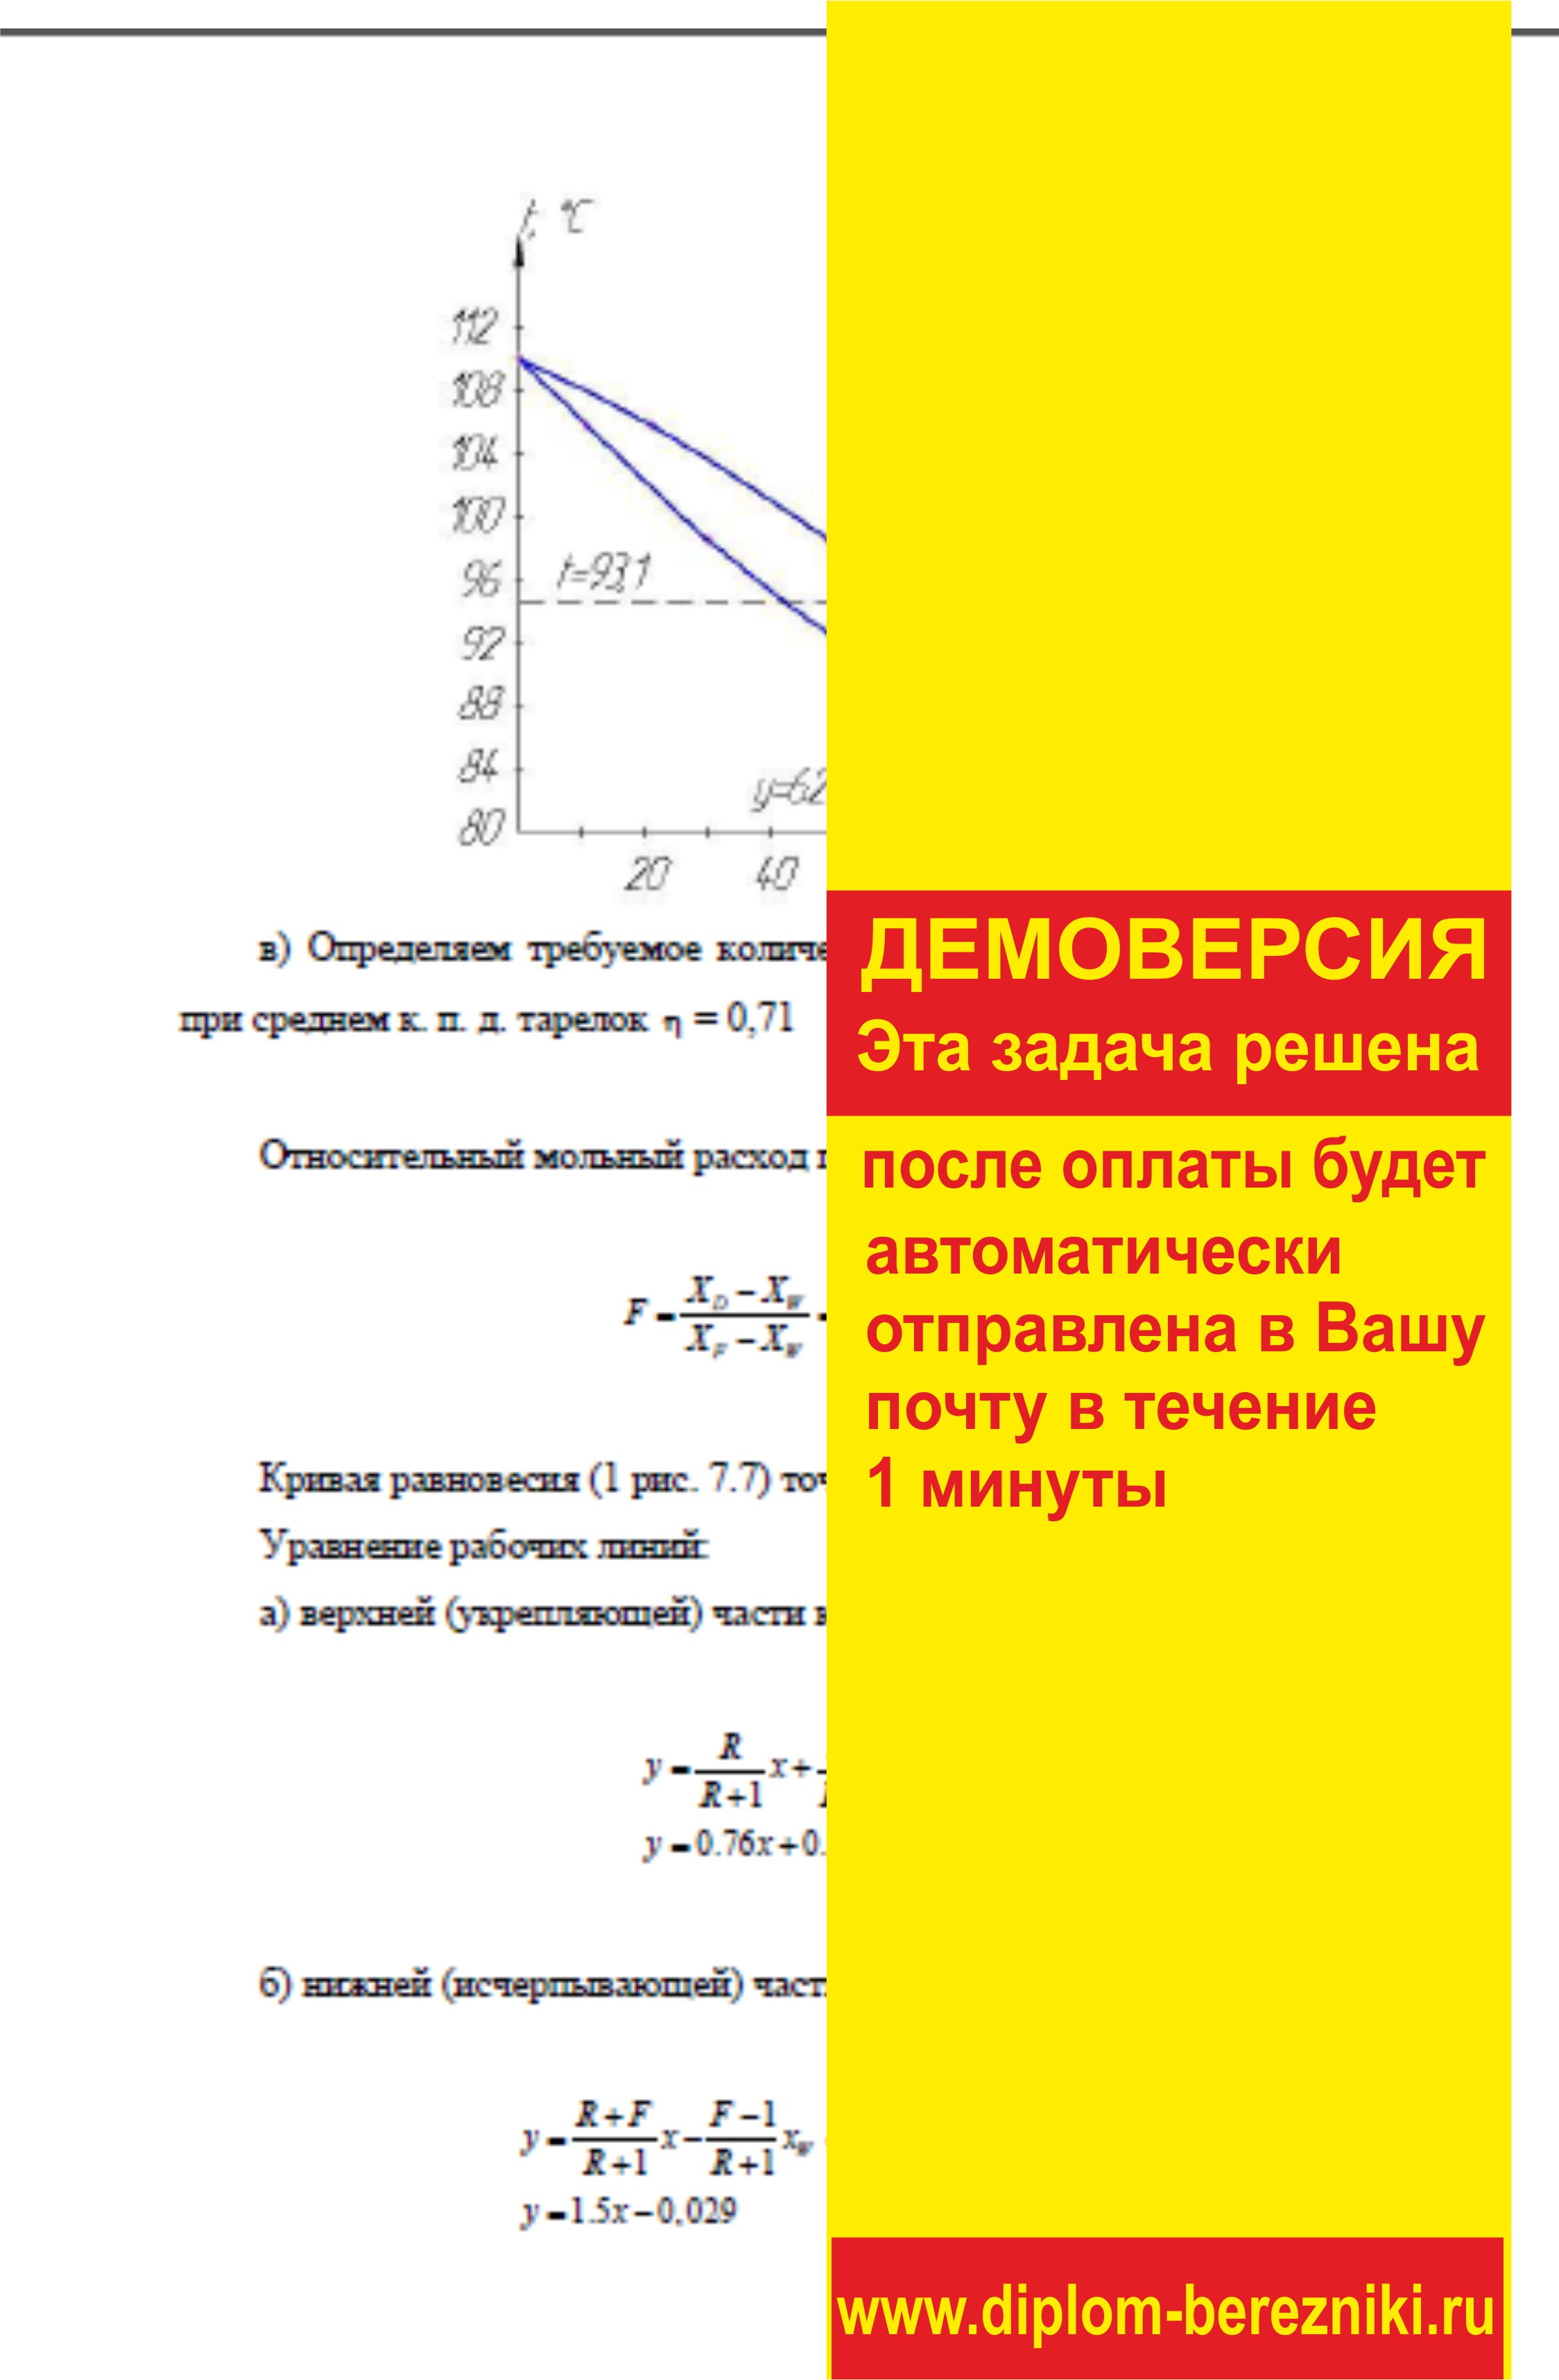 Решение задачи 7.27 по ПАХТ из задачника Павлова Романкова Носкова